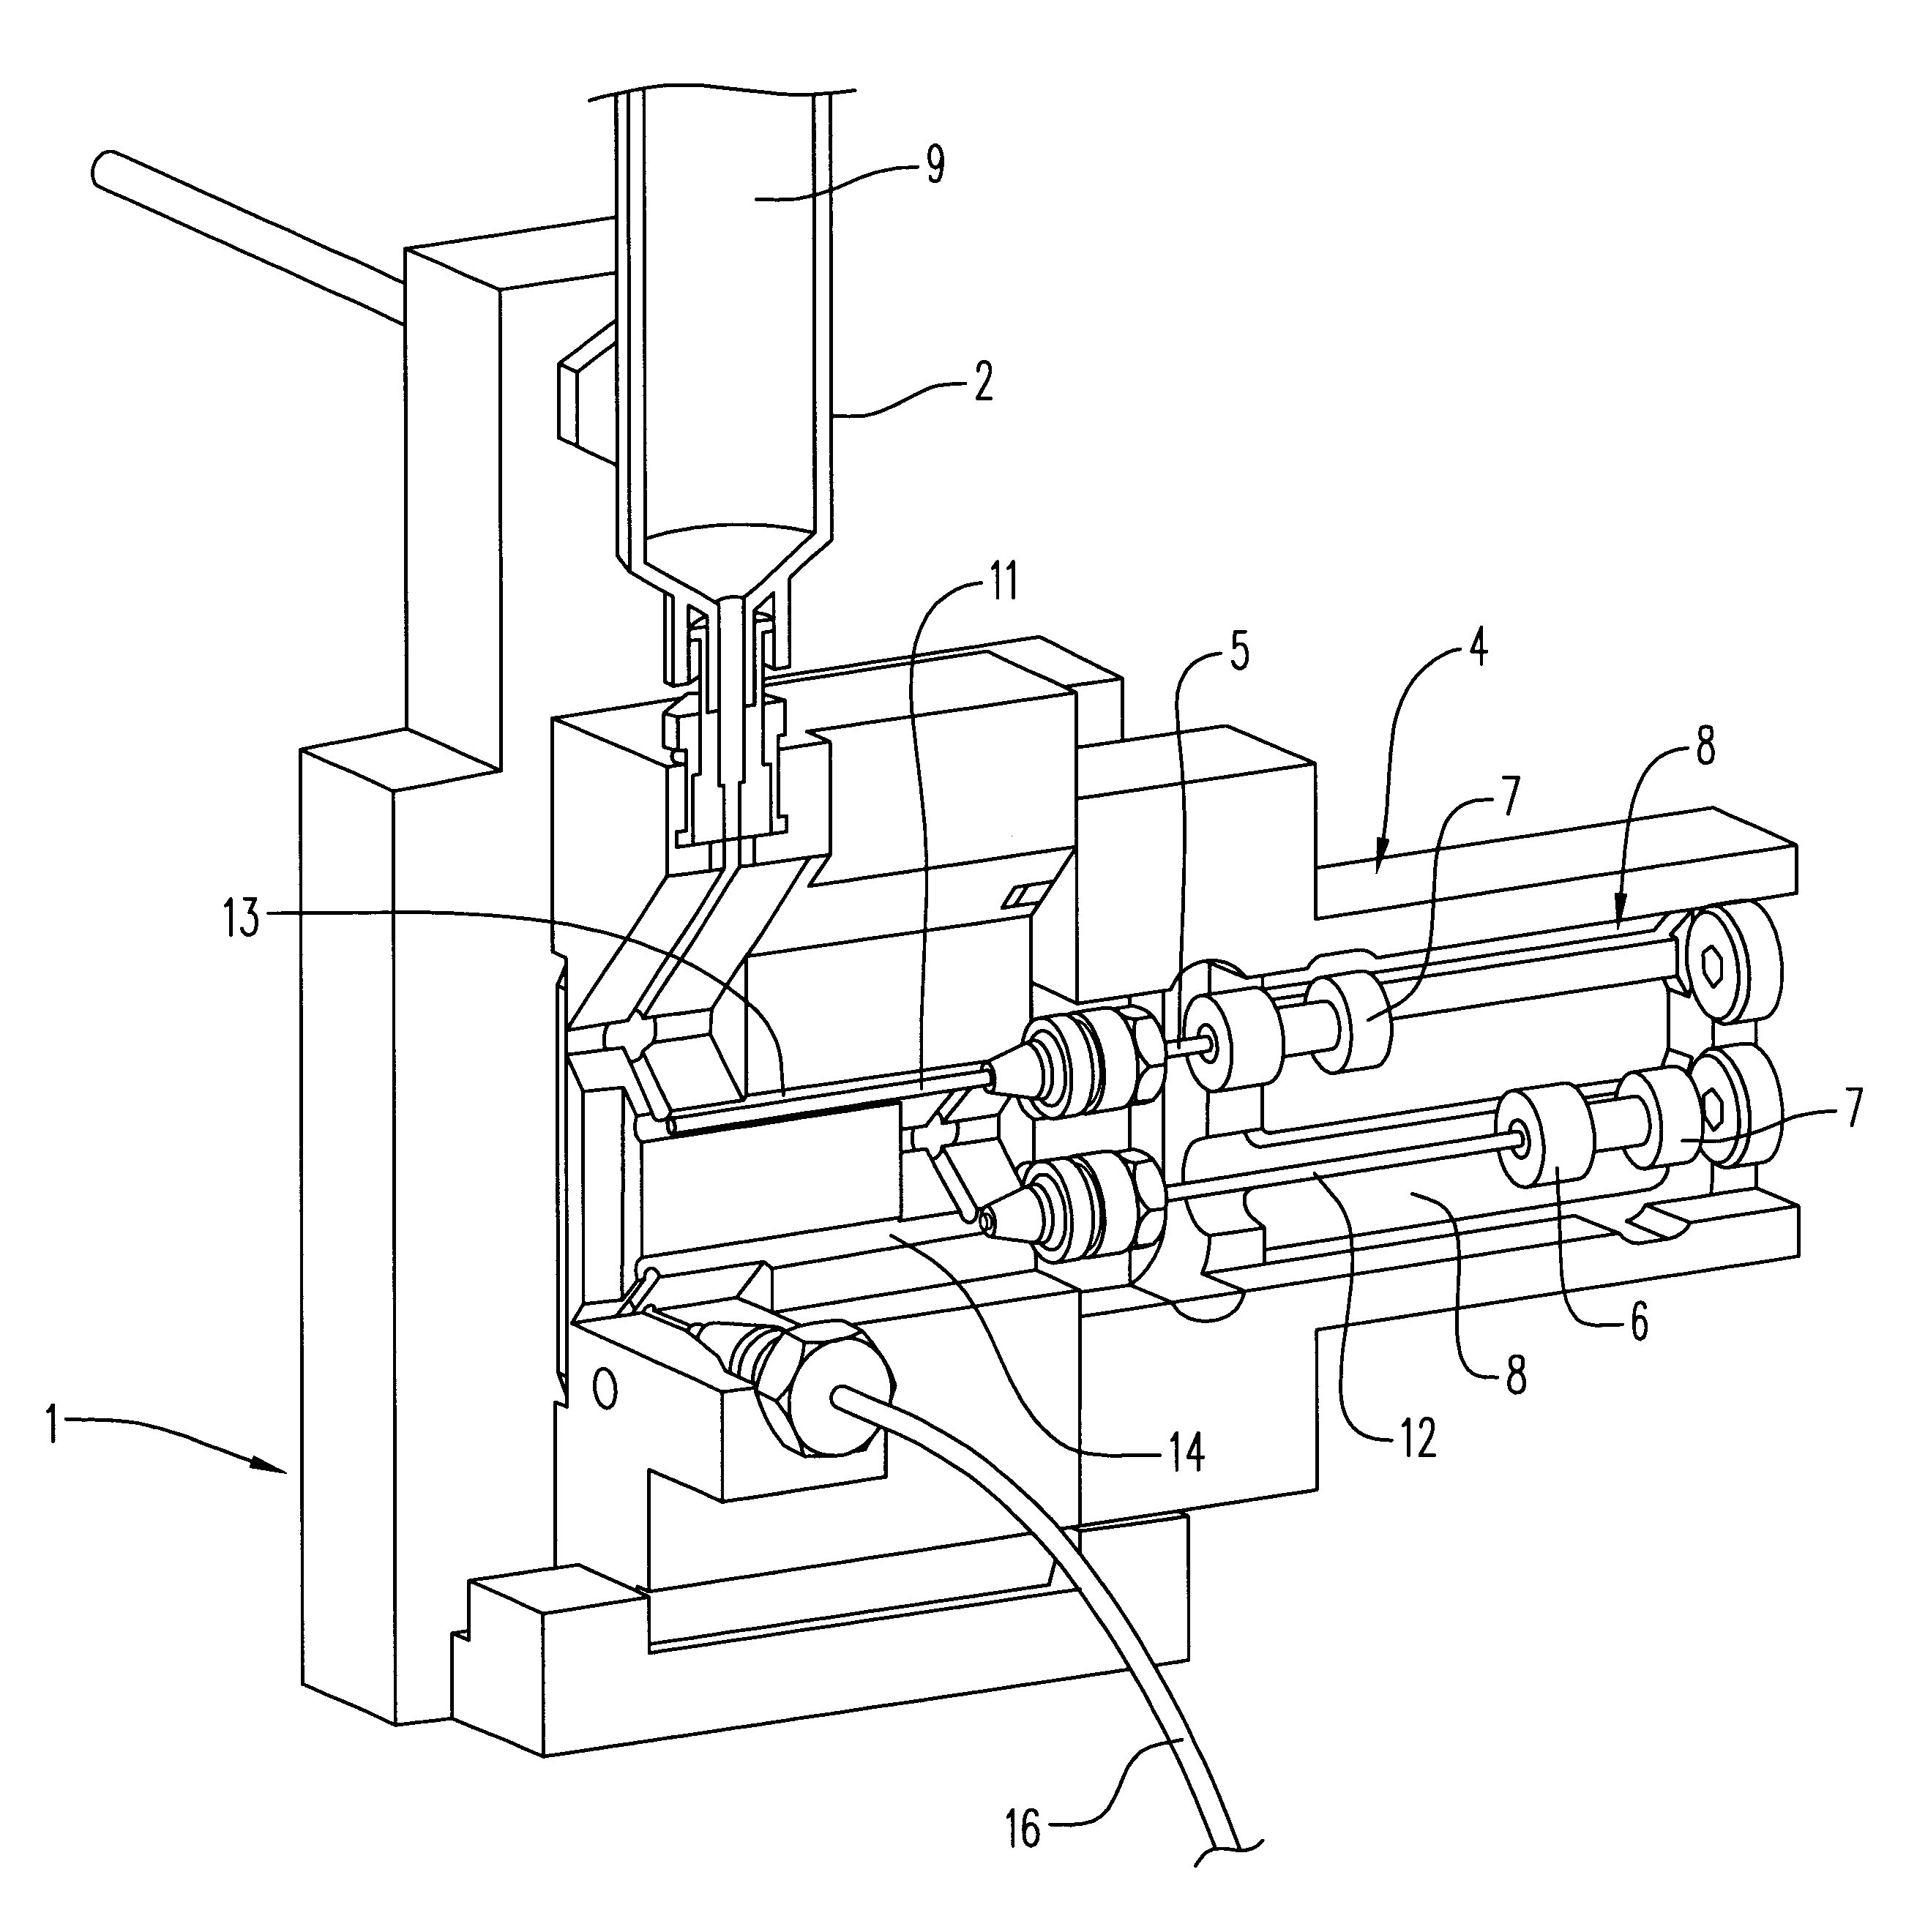 Fluid dispensing apparatus